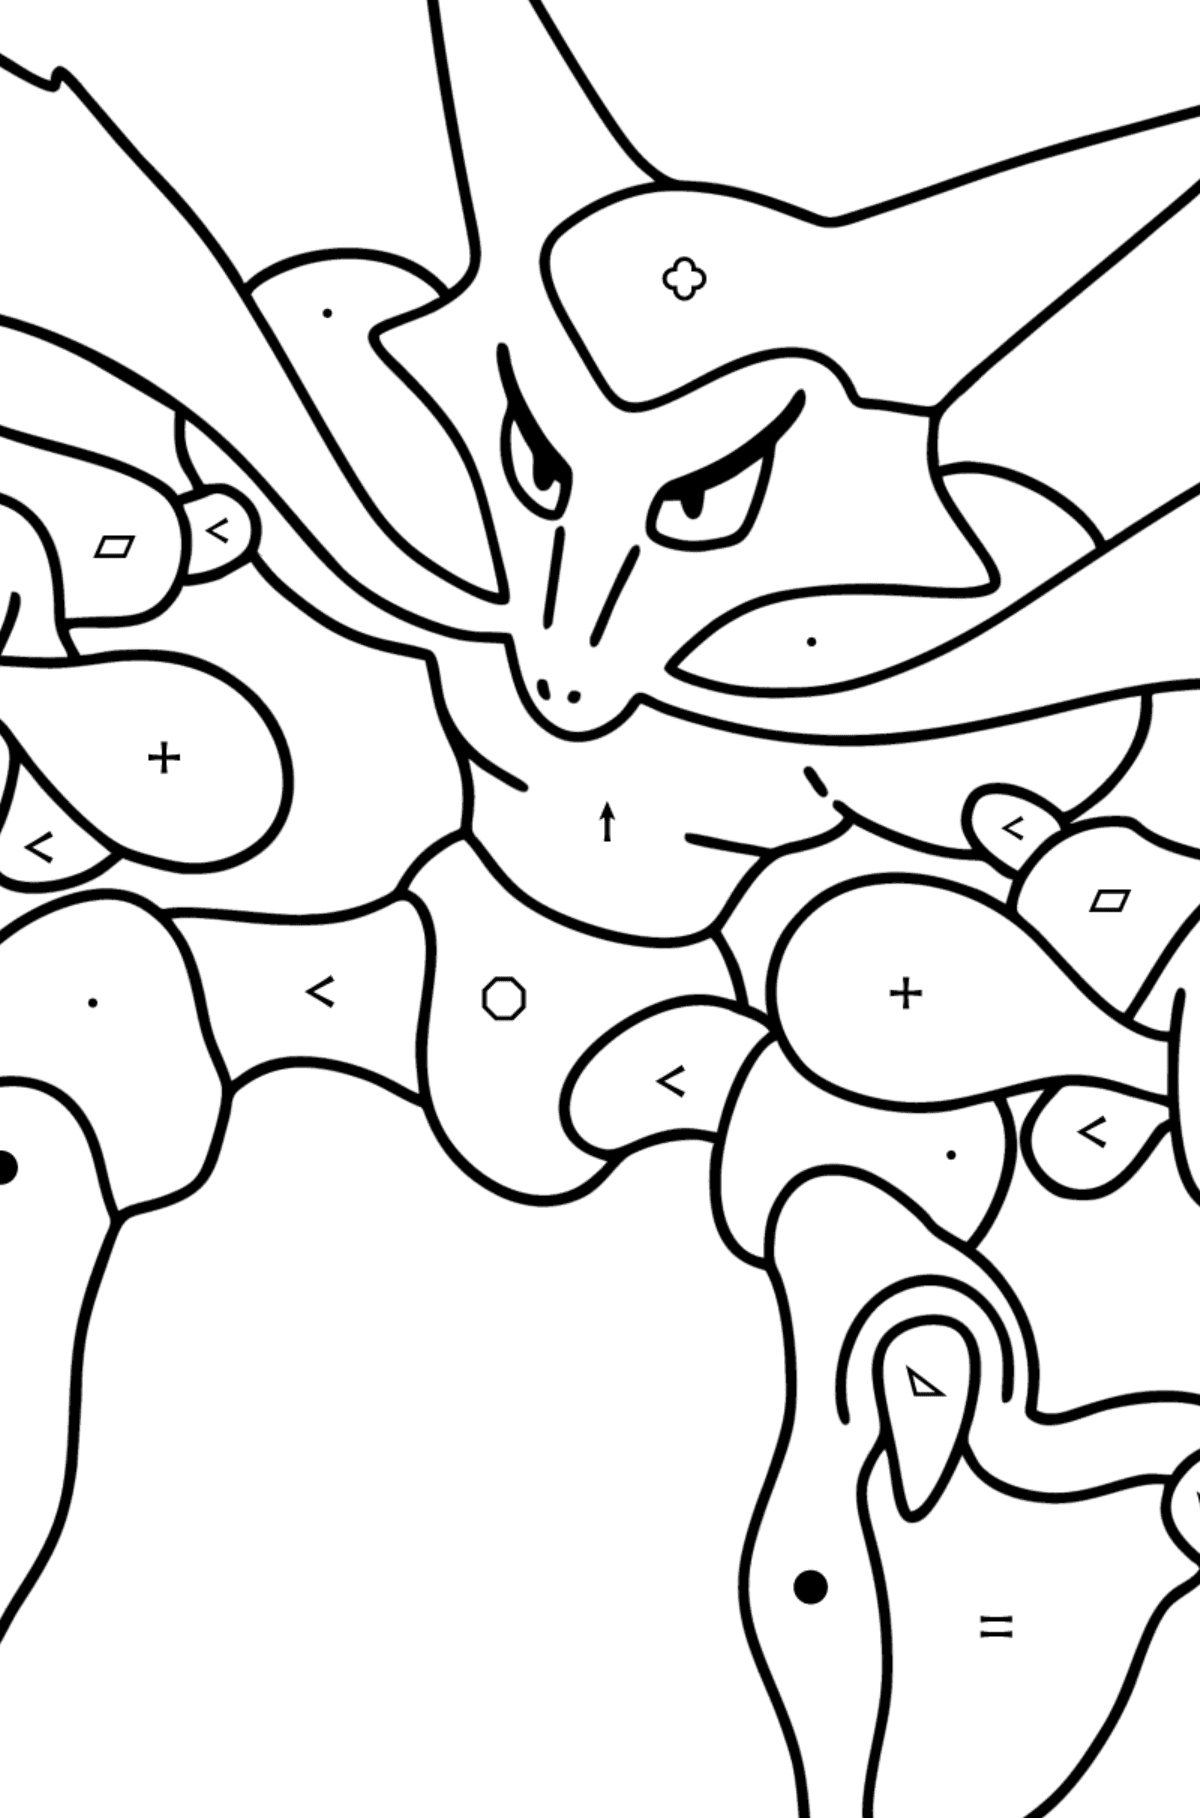 Målarbild Pokémon Go Alakazam - Färgläggning efter symboler och av geometriska figurer För barn